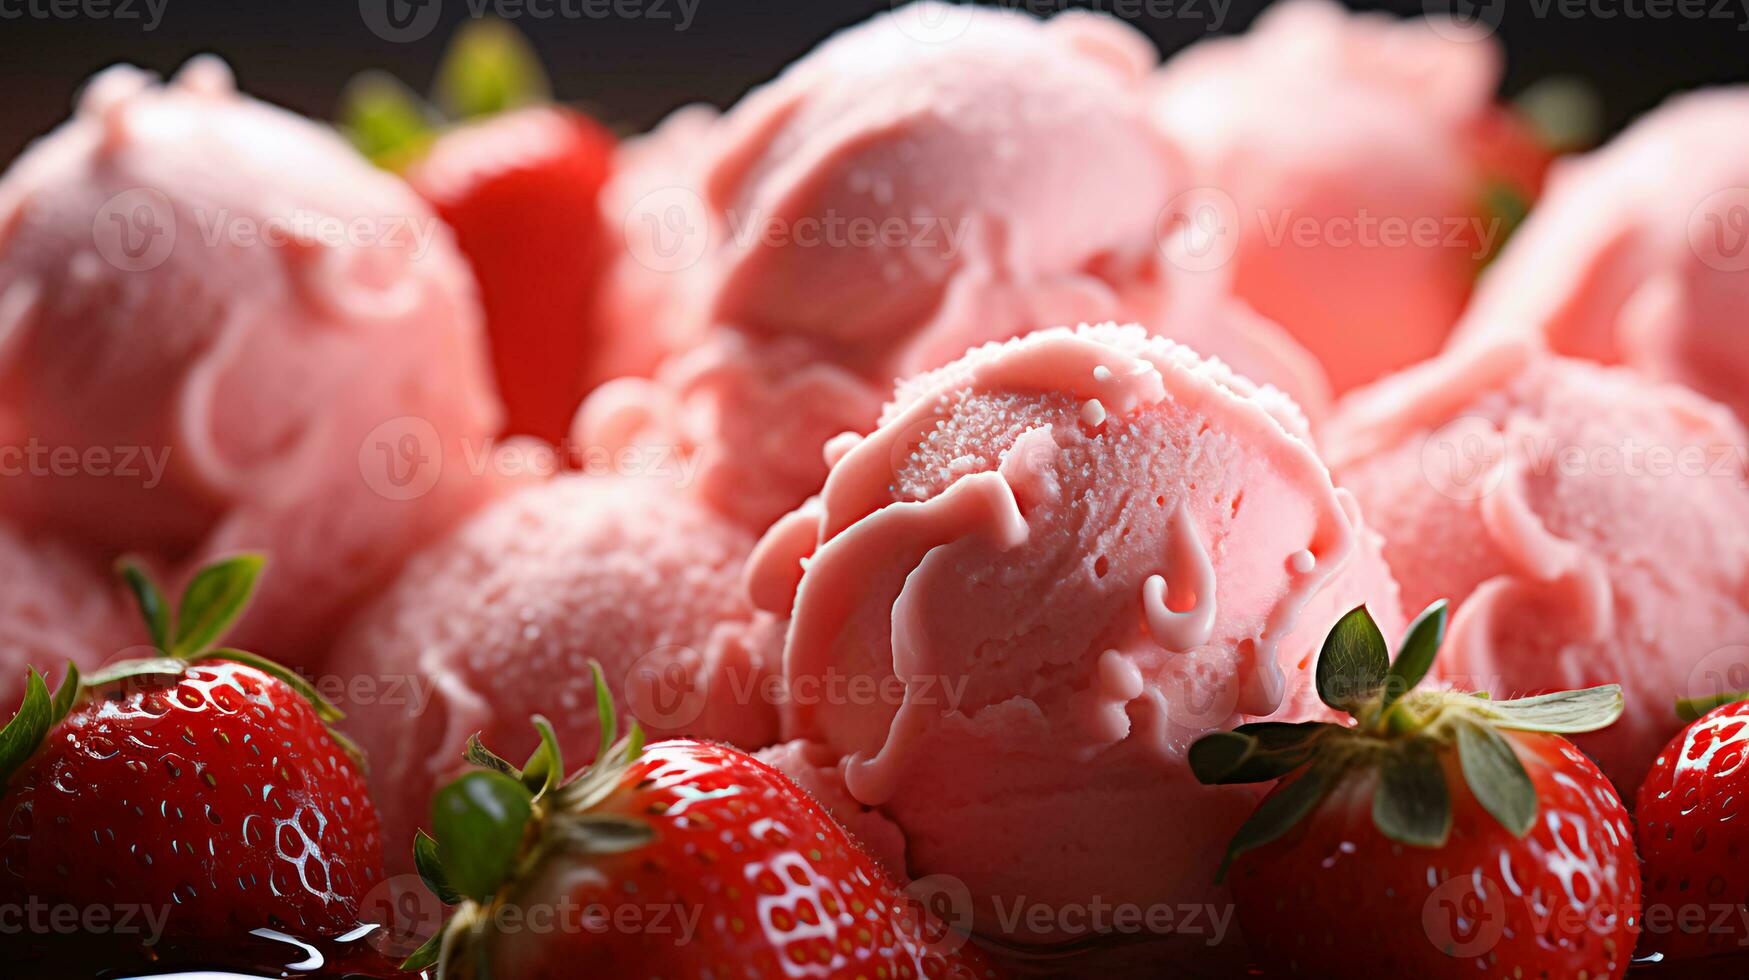 delicioso pelotas de fresa rosado hielo crema helado con frutas y nueces foto